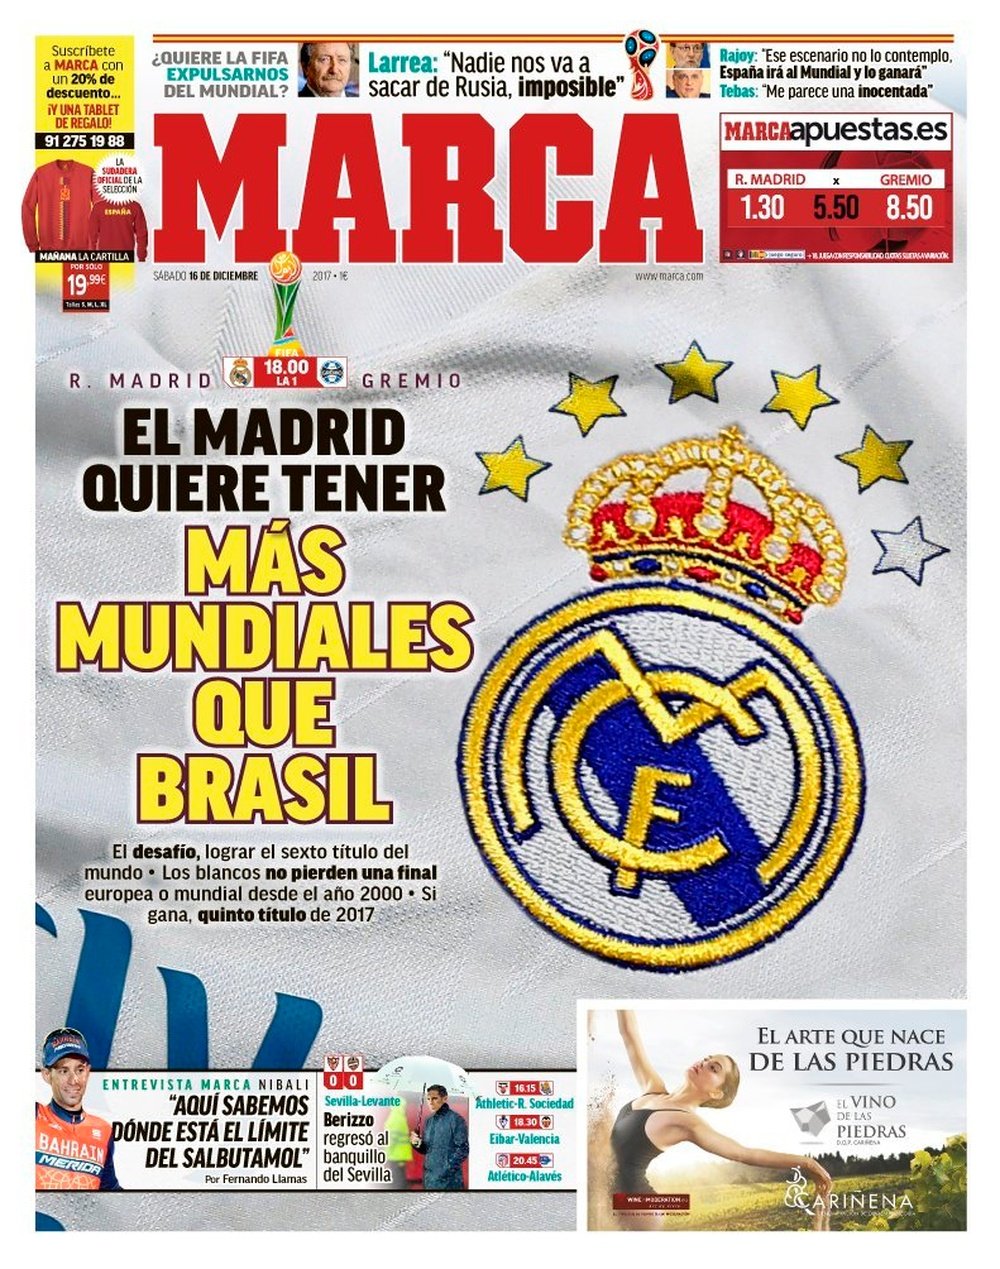 Capa do jornal 'Marca' de 16 de dezembro de 2017. Marca